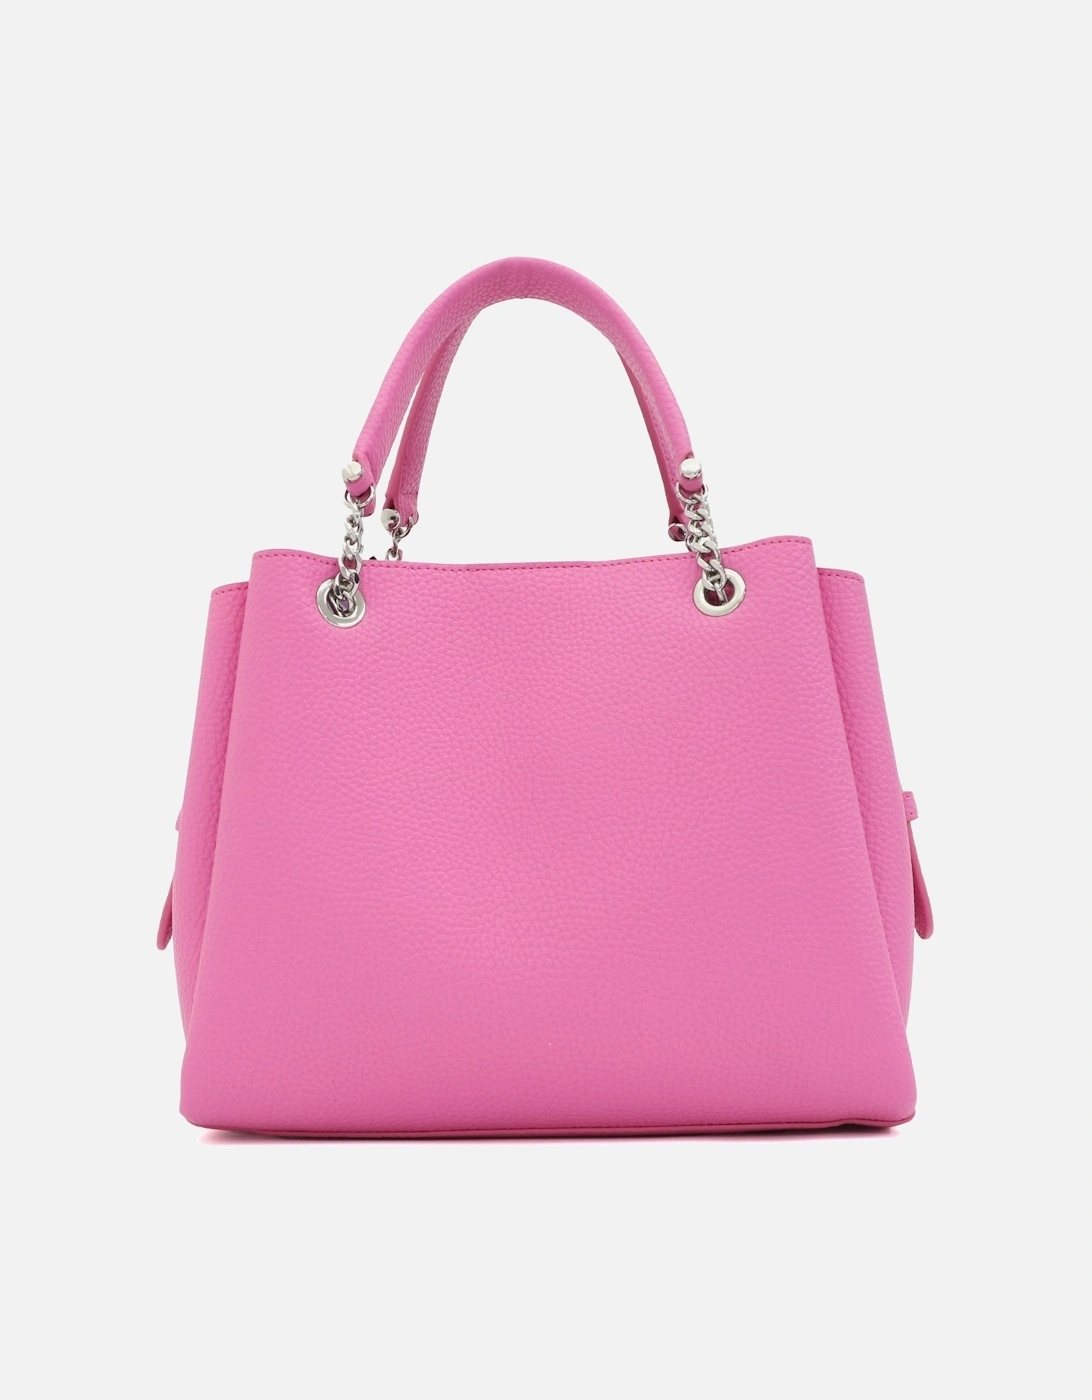 Medium Pink Tote Bag